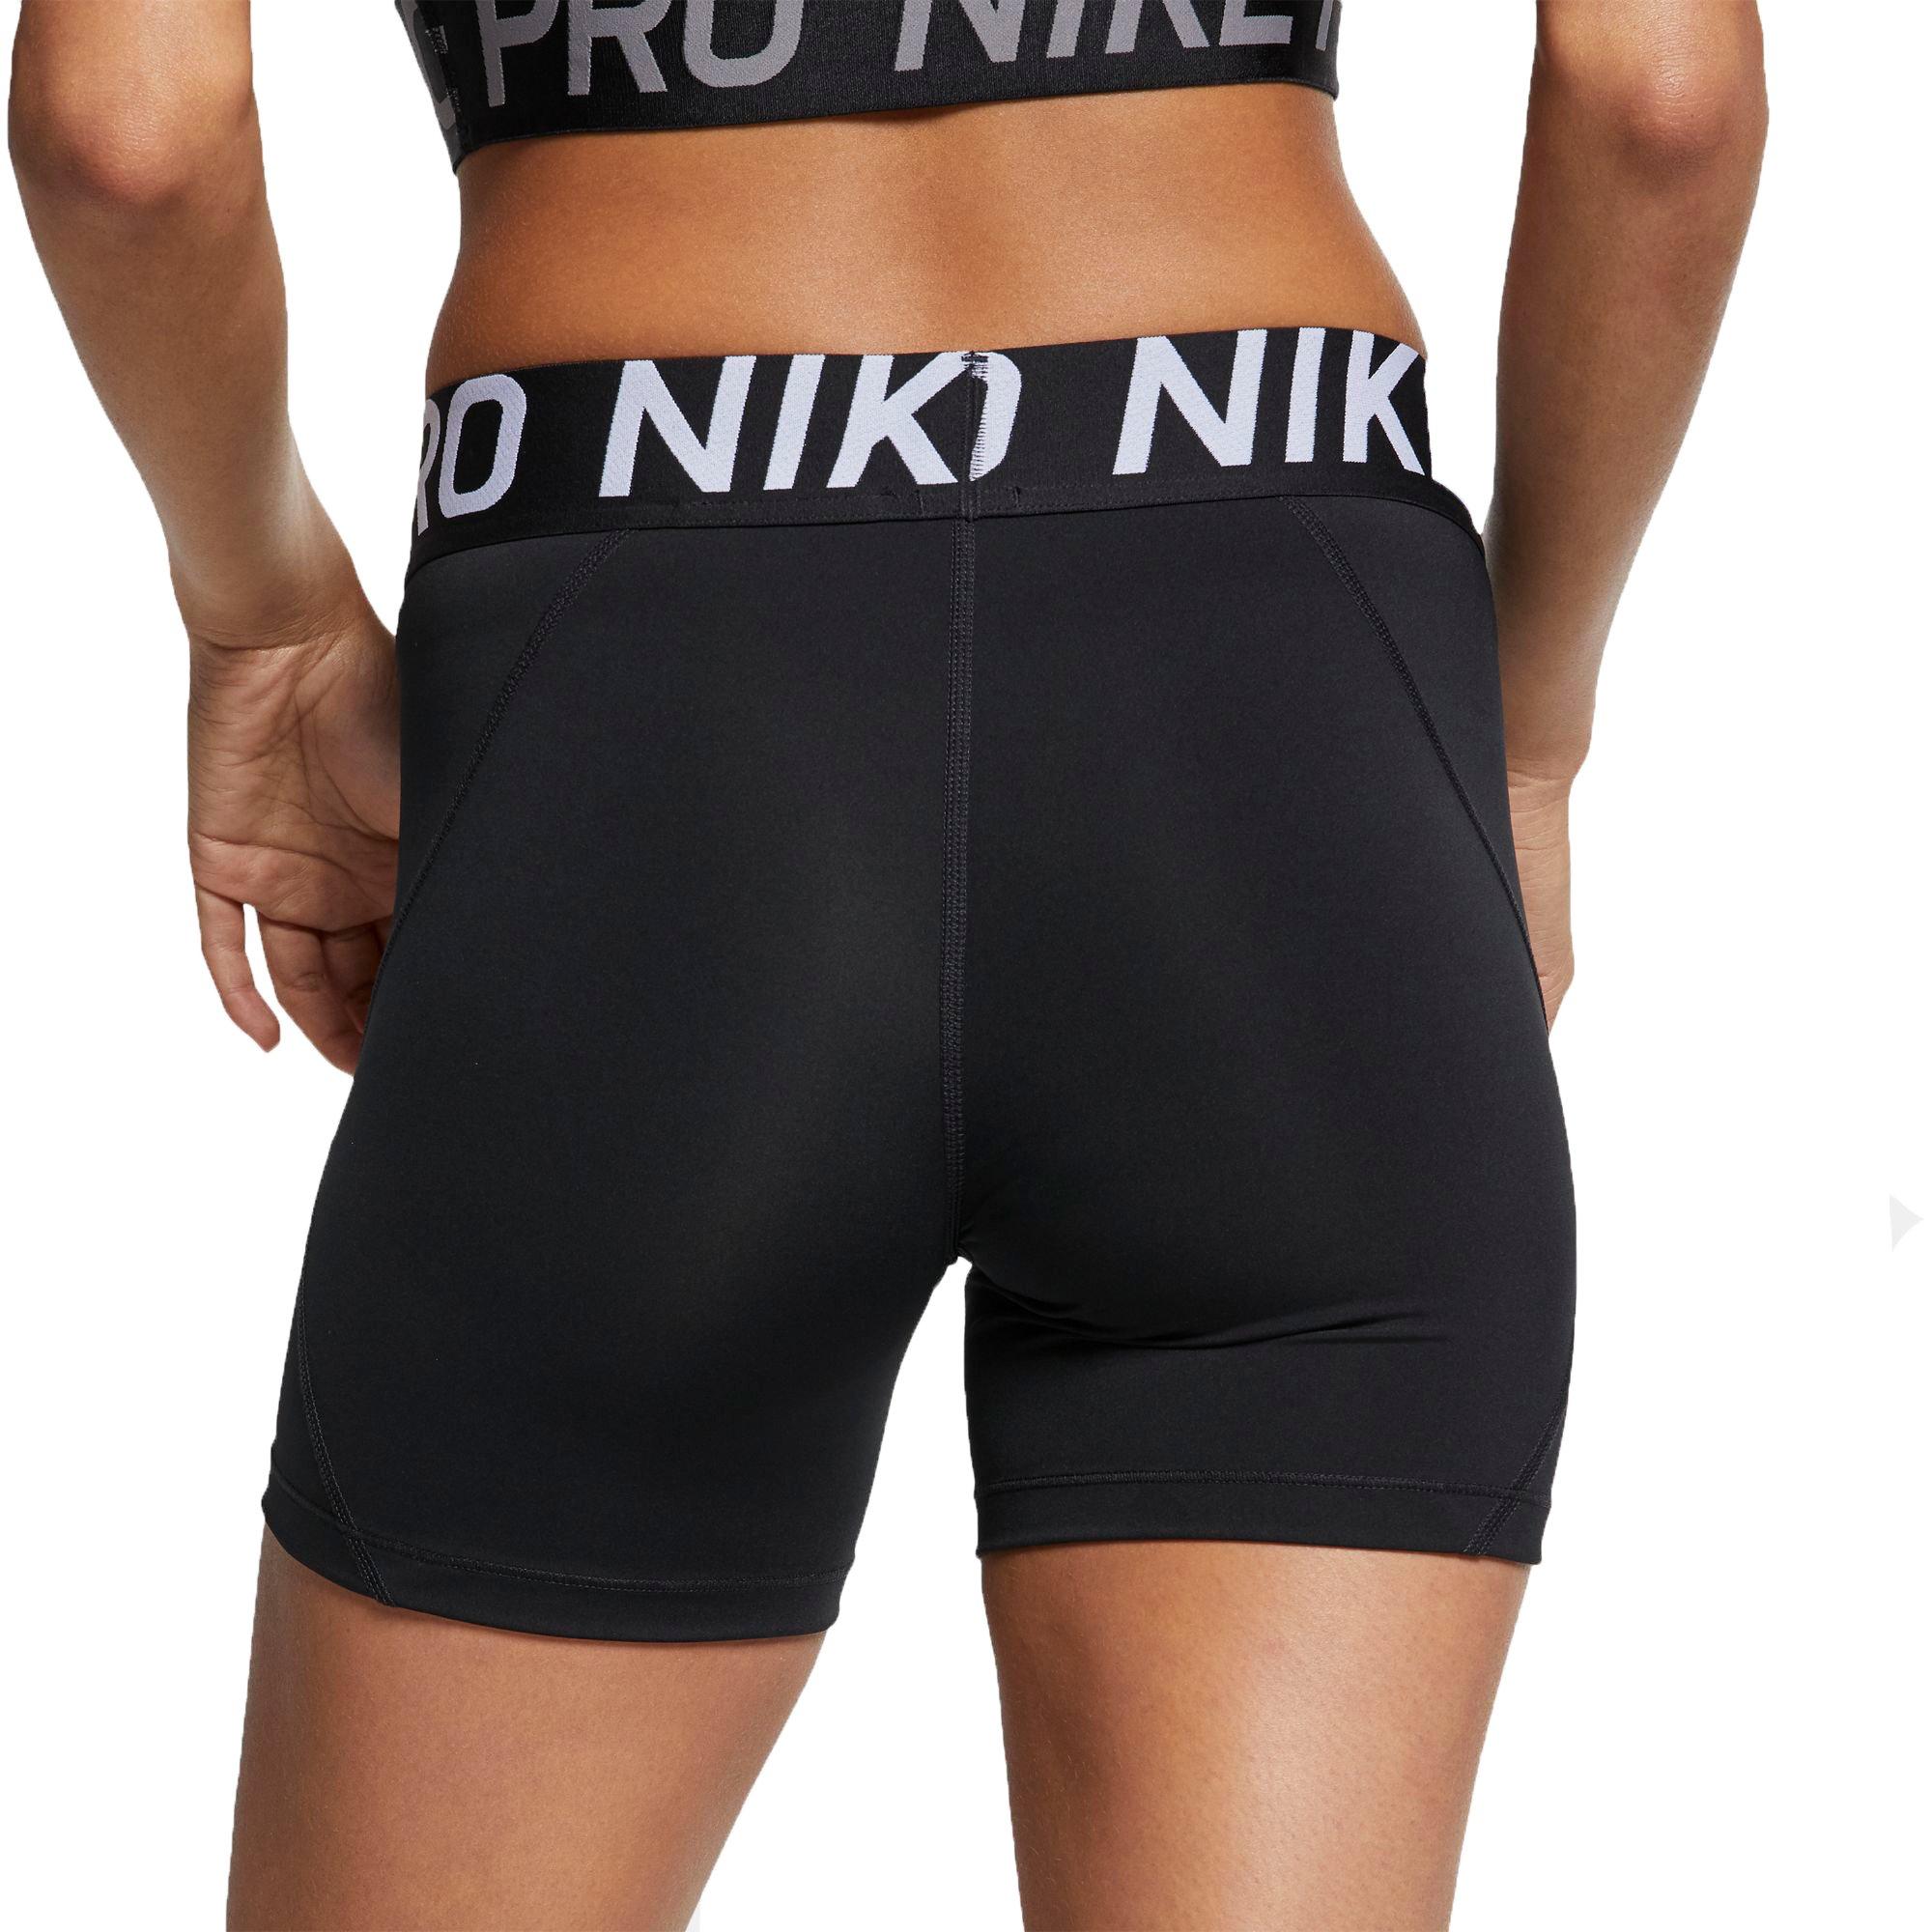 nike pro 5 inch training shorts